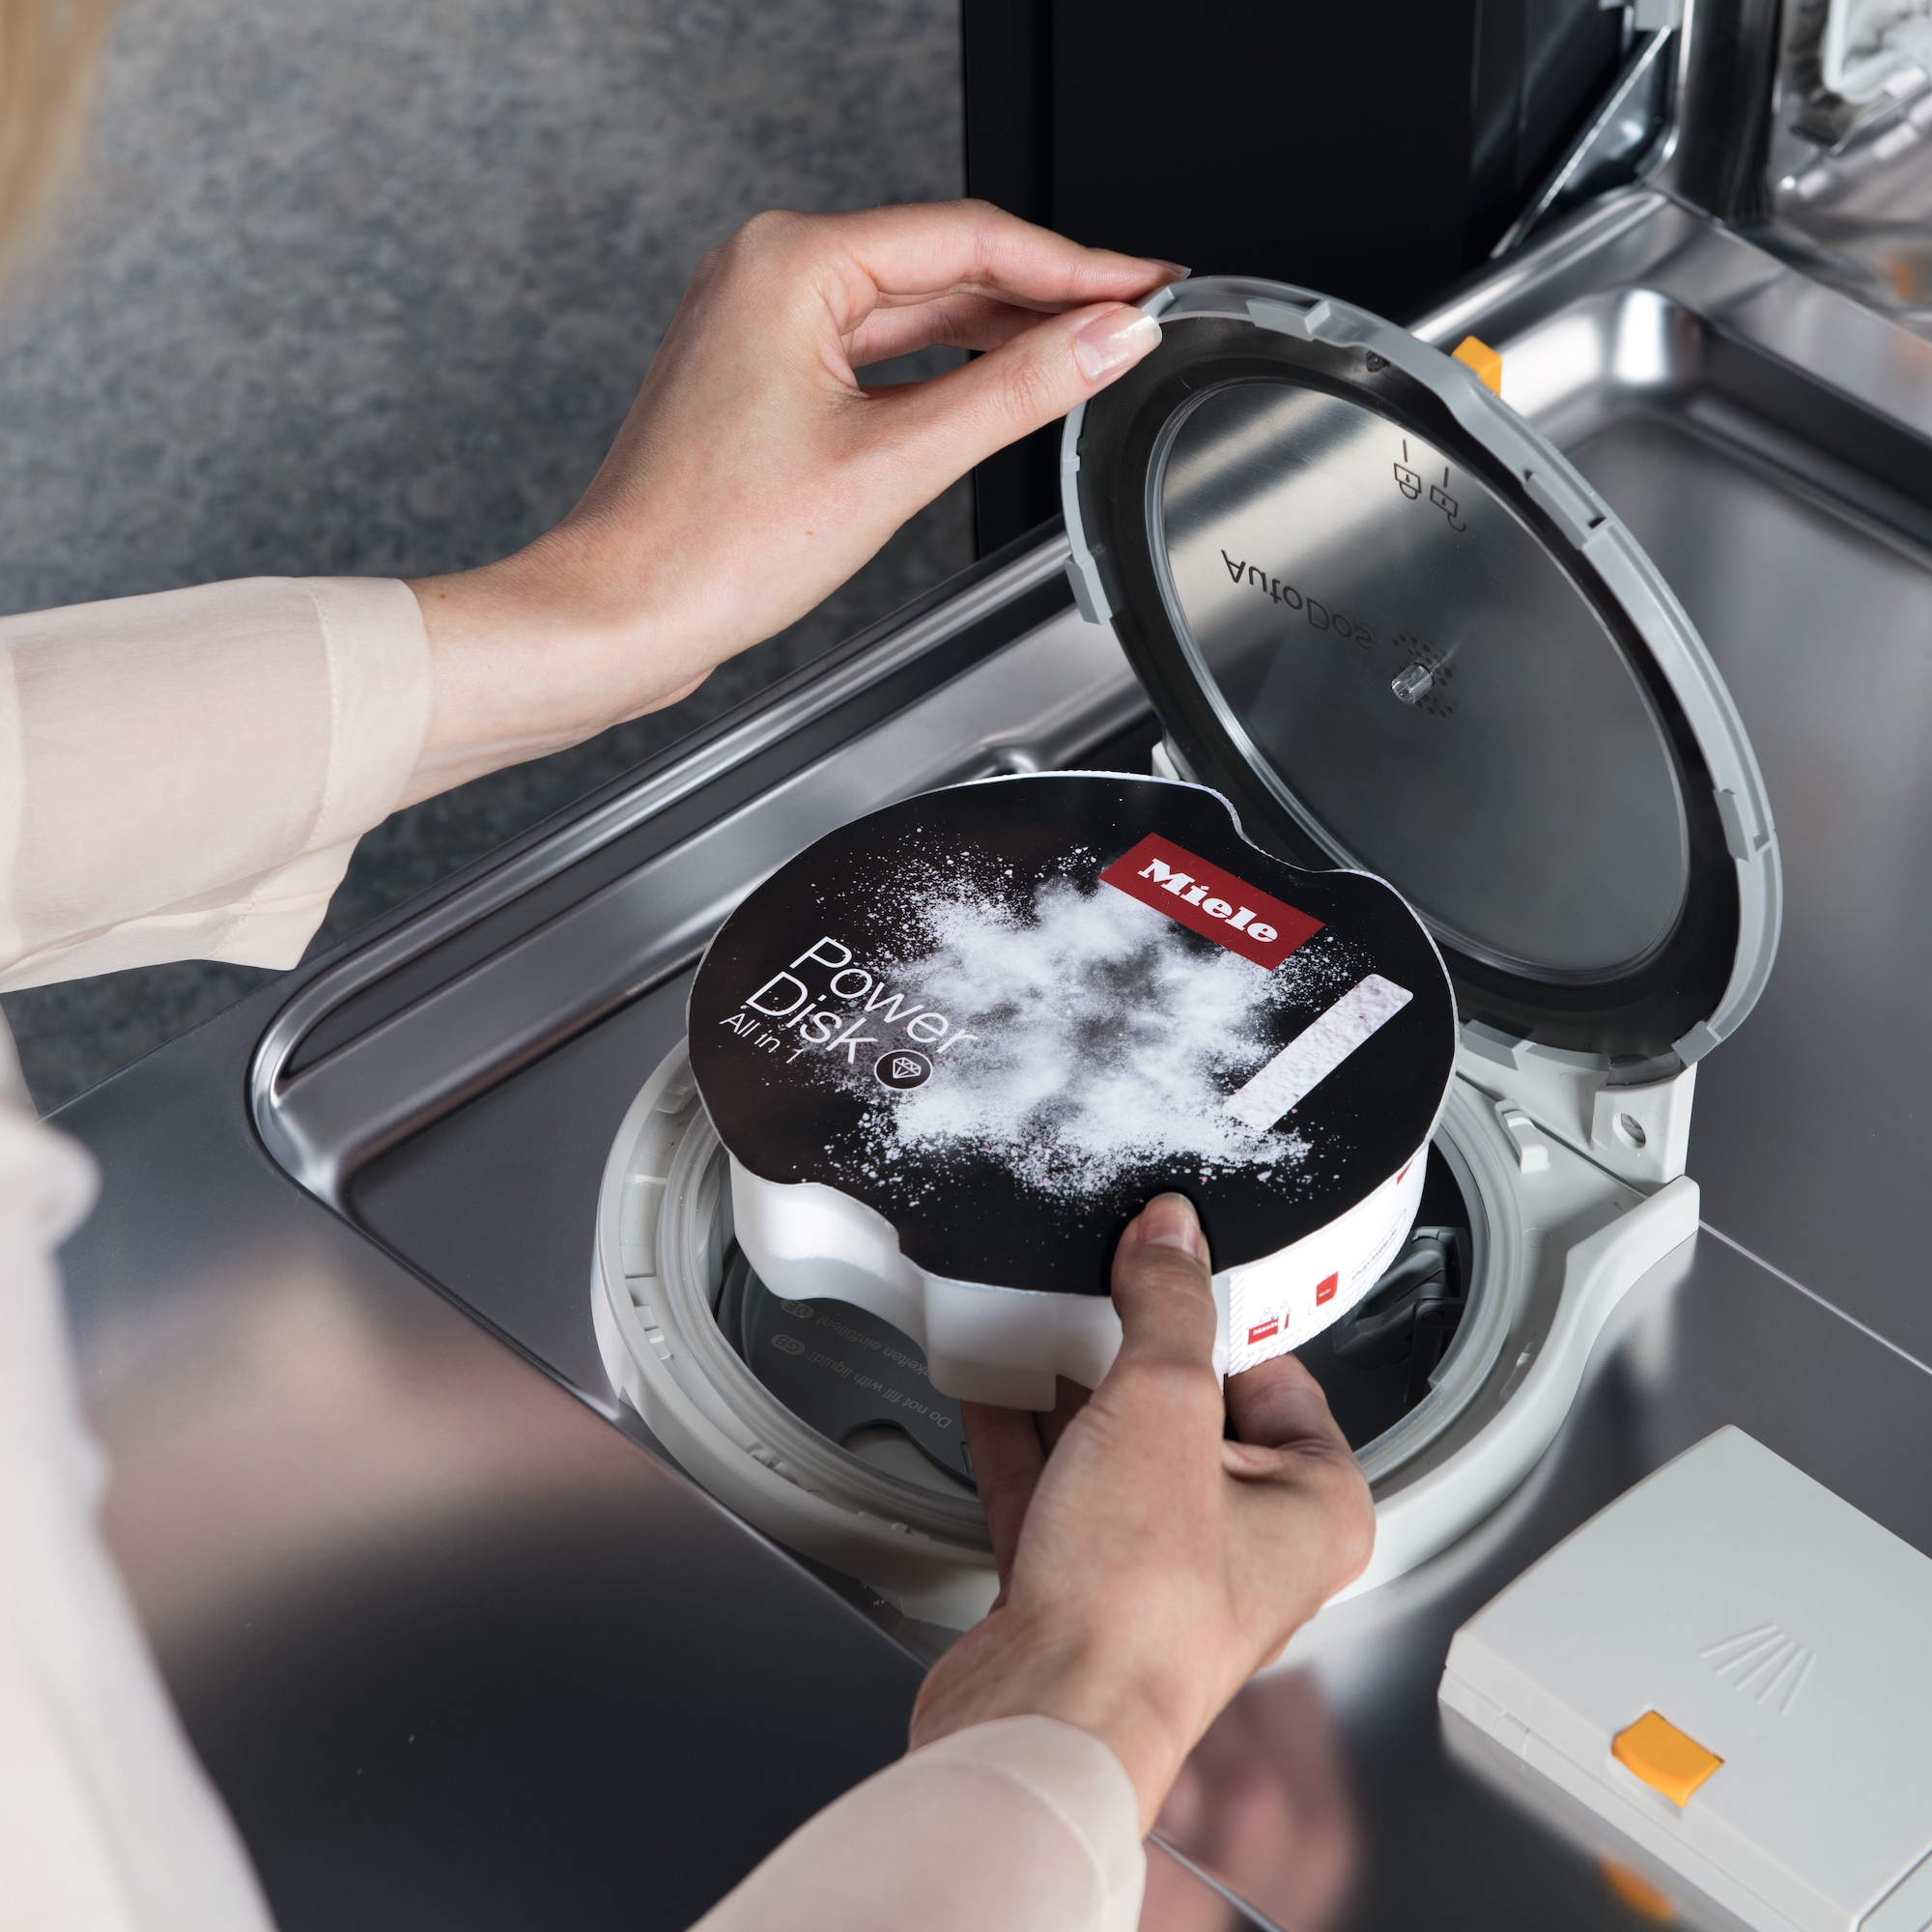 ODR Miele Nov./Janv. 2024 : Lave-vaisselle posable AutoDos